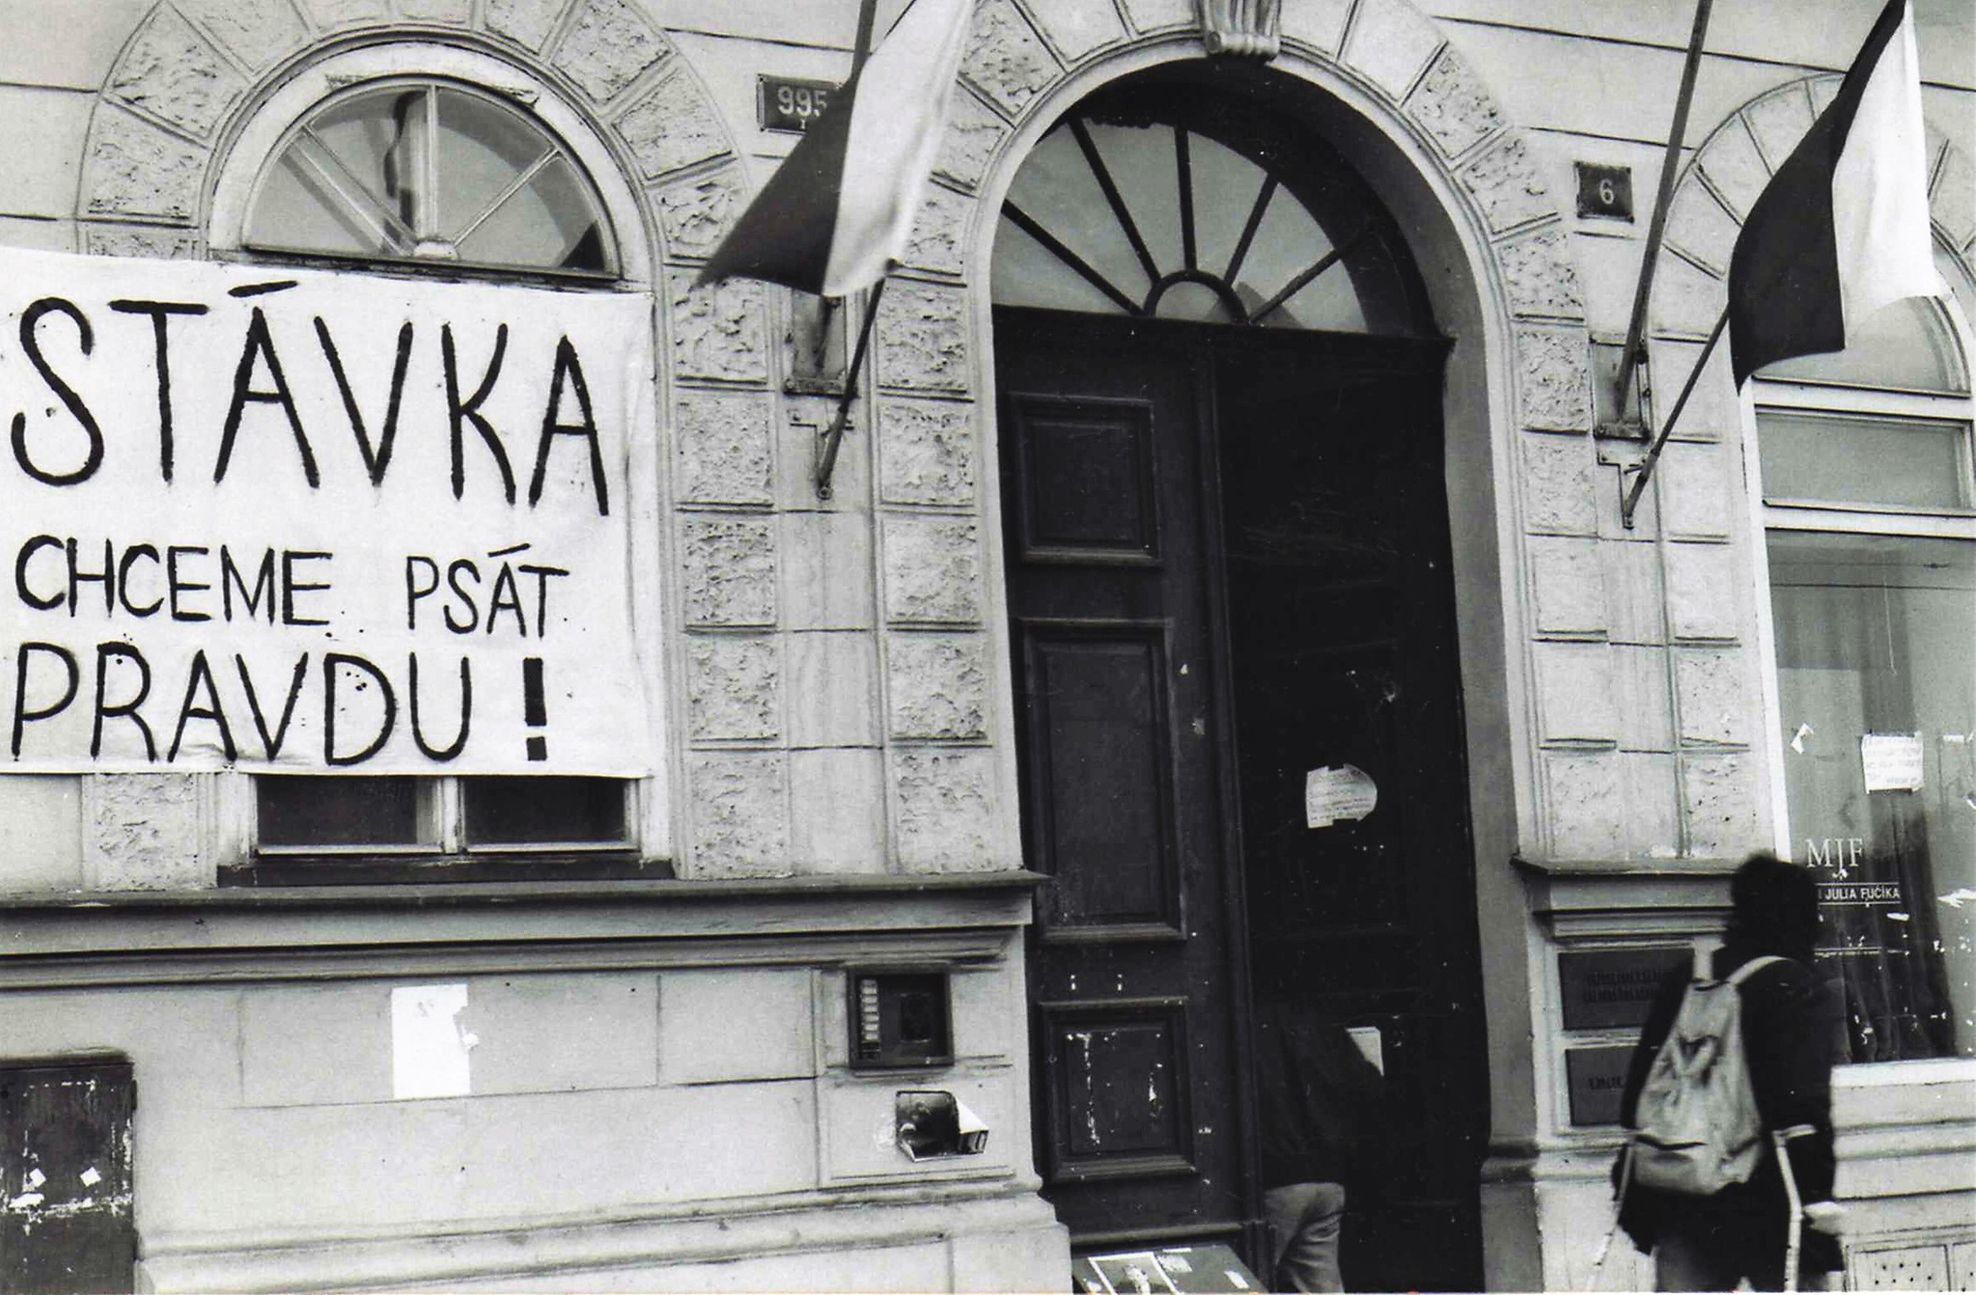 Foto / Výročí 100. let Československa – 8. díl  Listopad 1989